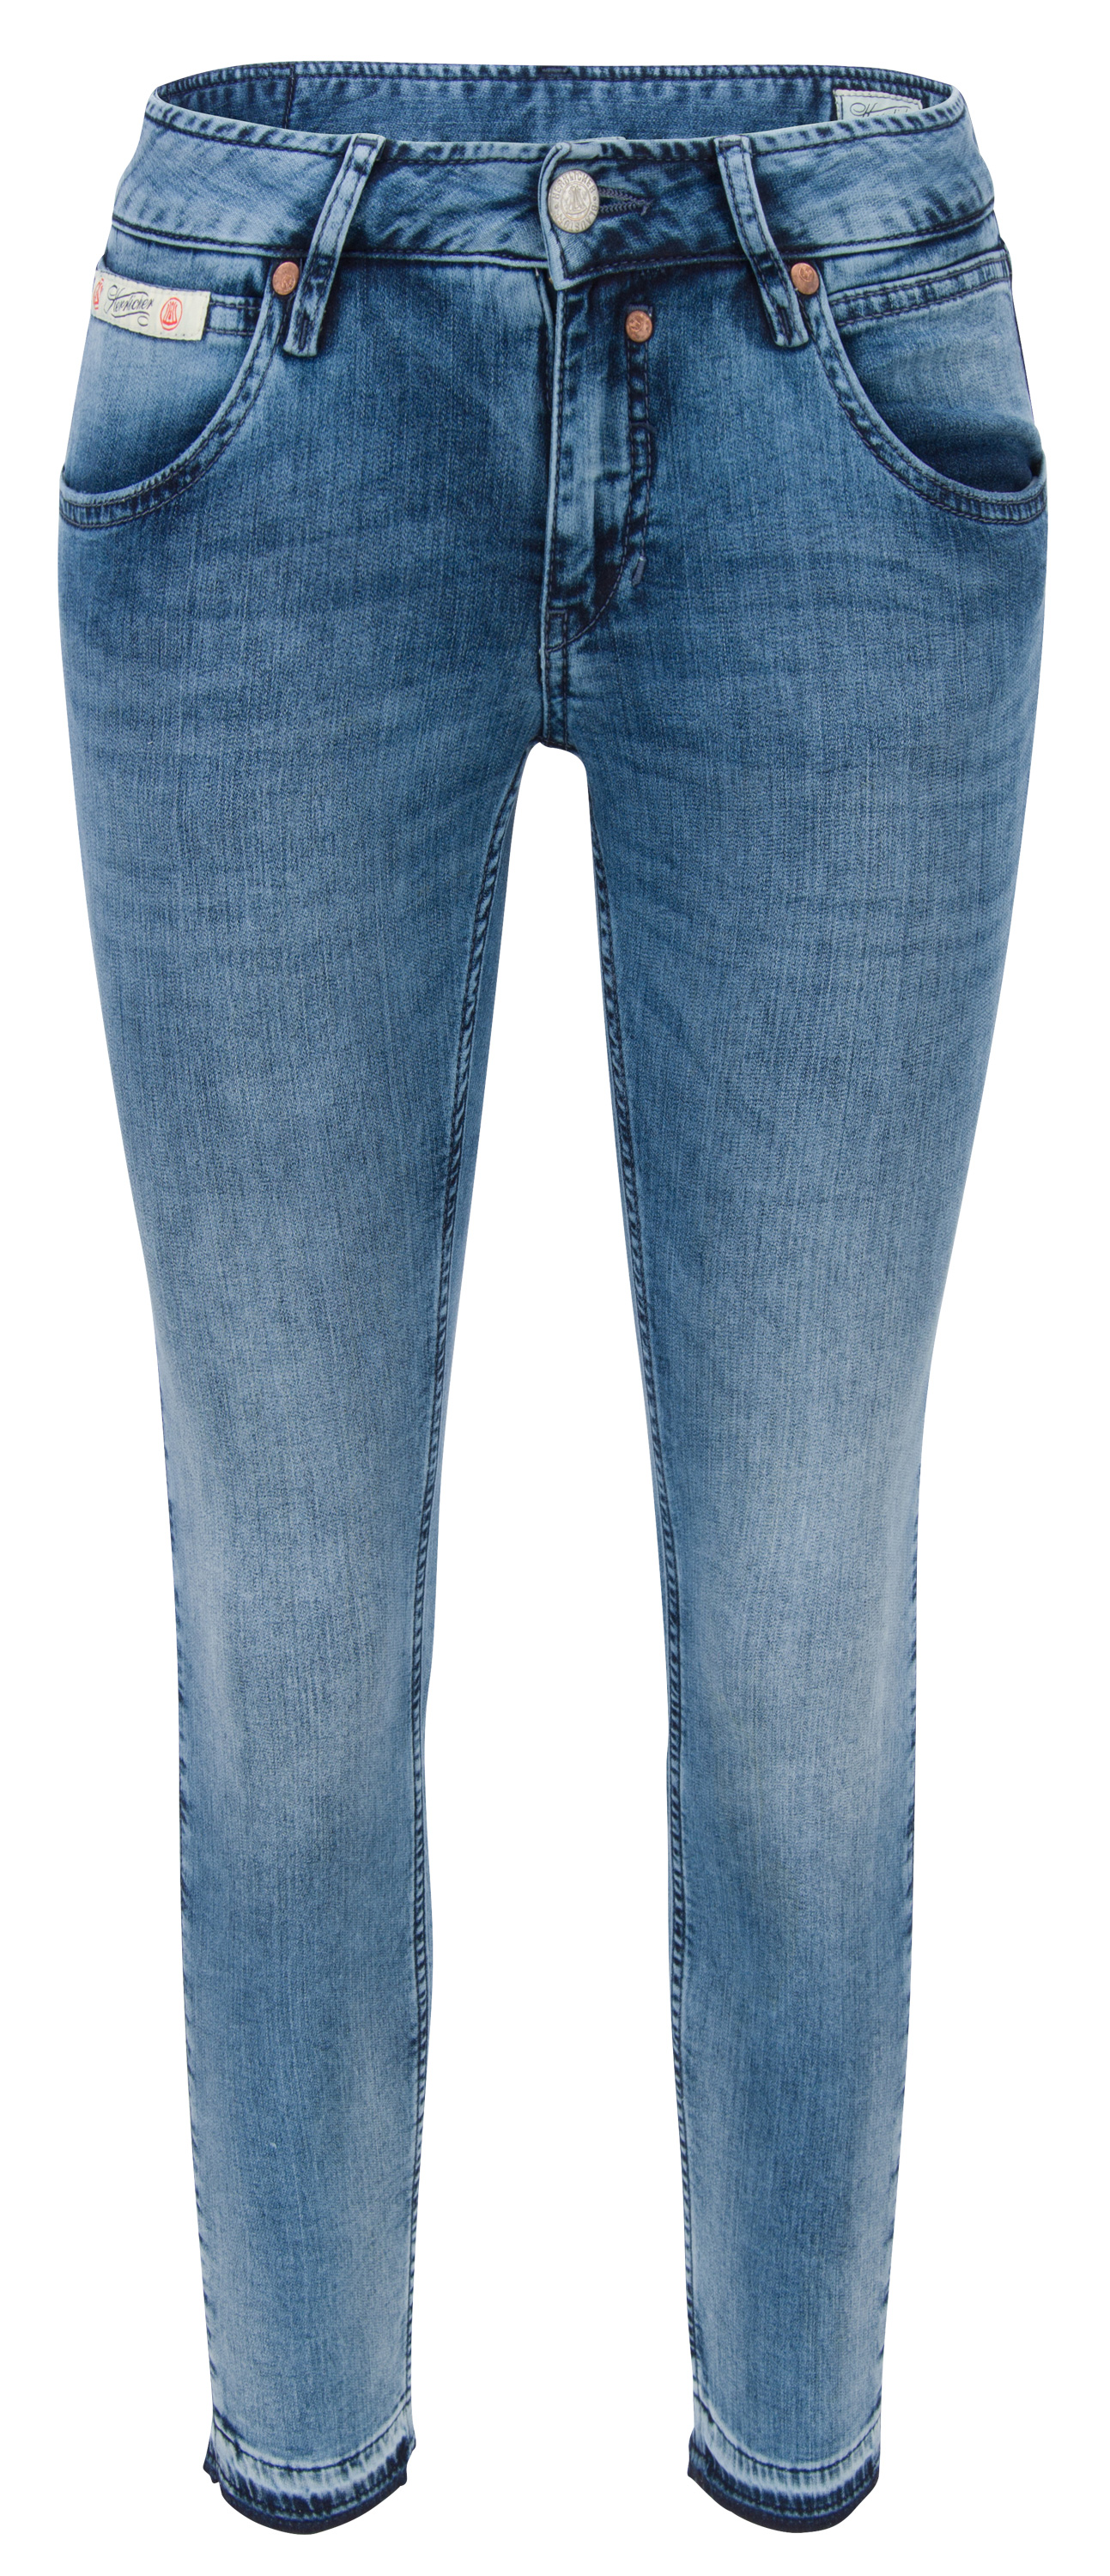 HERRLICHER TOUCH Cropped Jogg Denim medium aged 5320-D9648-682 | Jeans ...